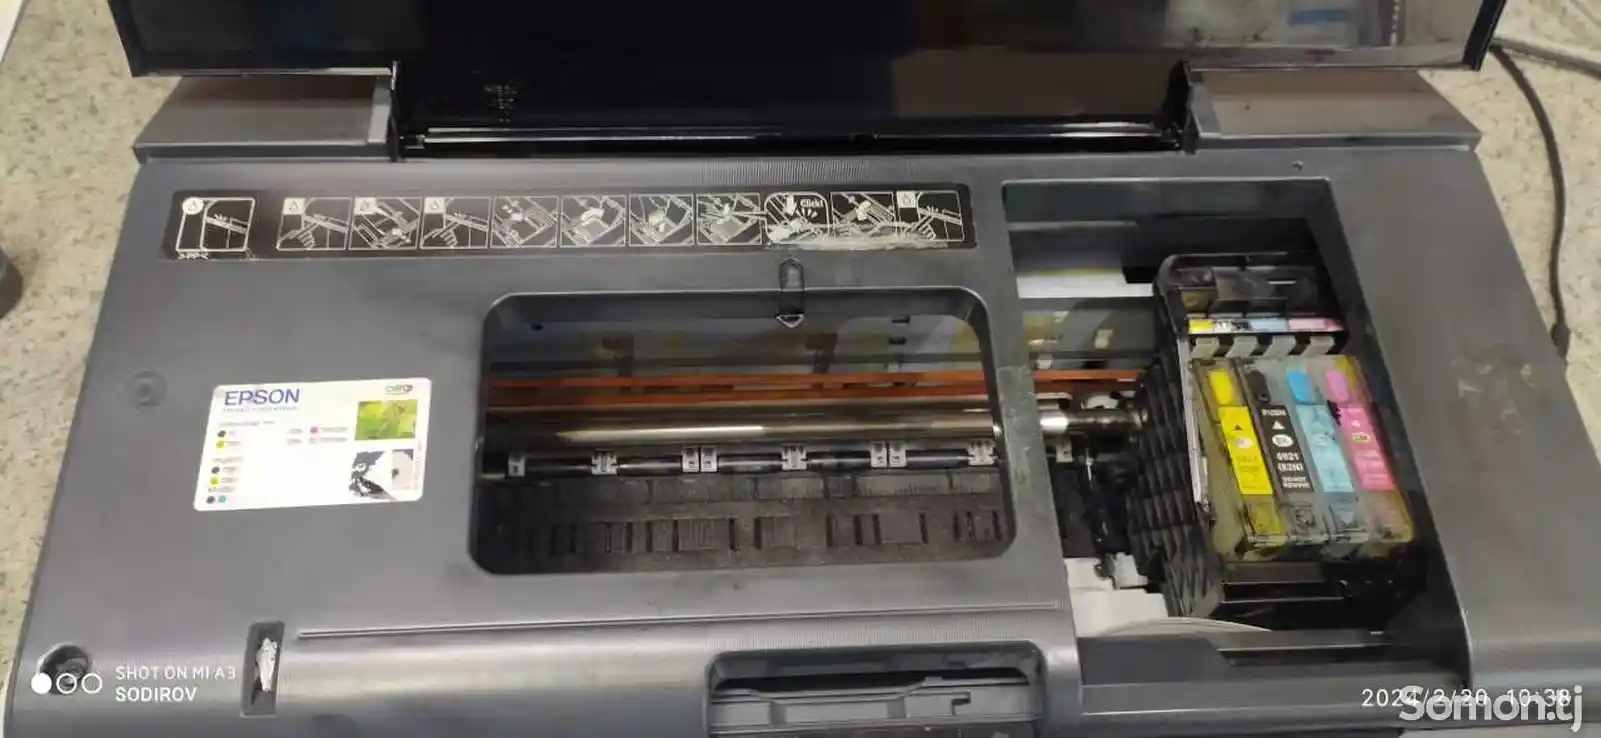 Принтер Цветной Epson T50-3